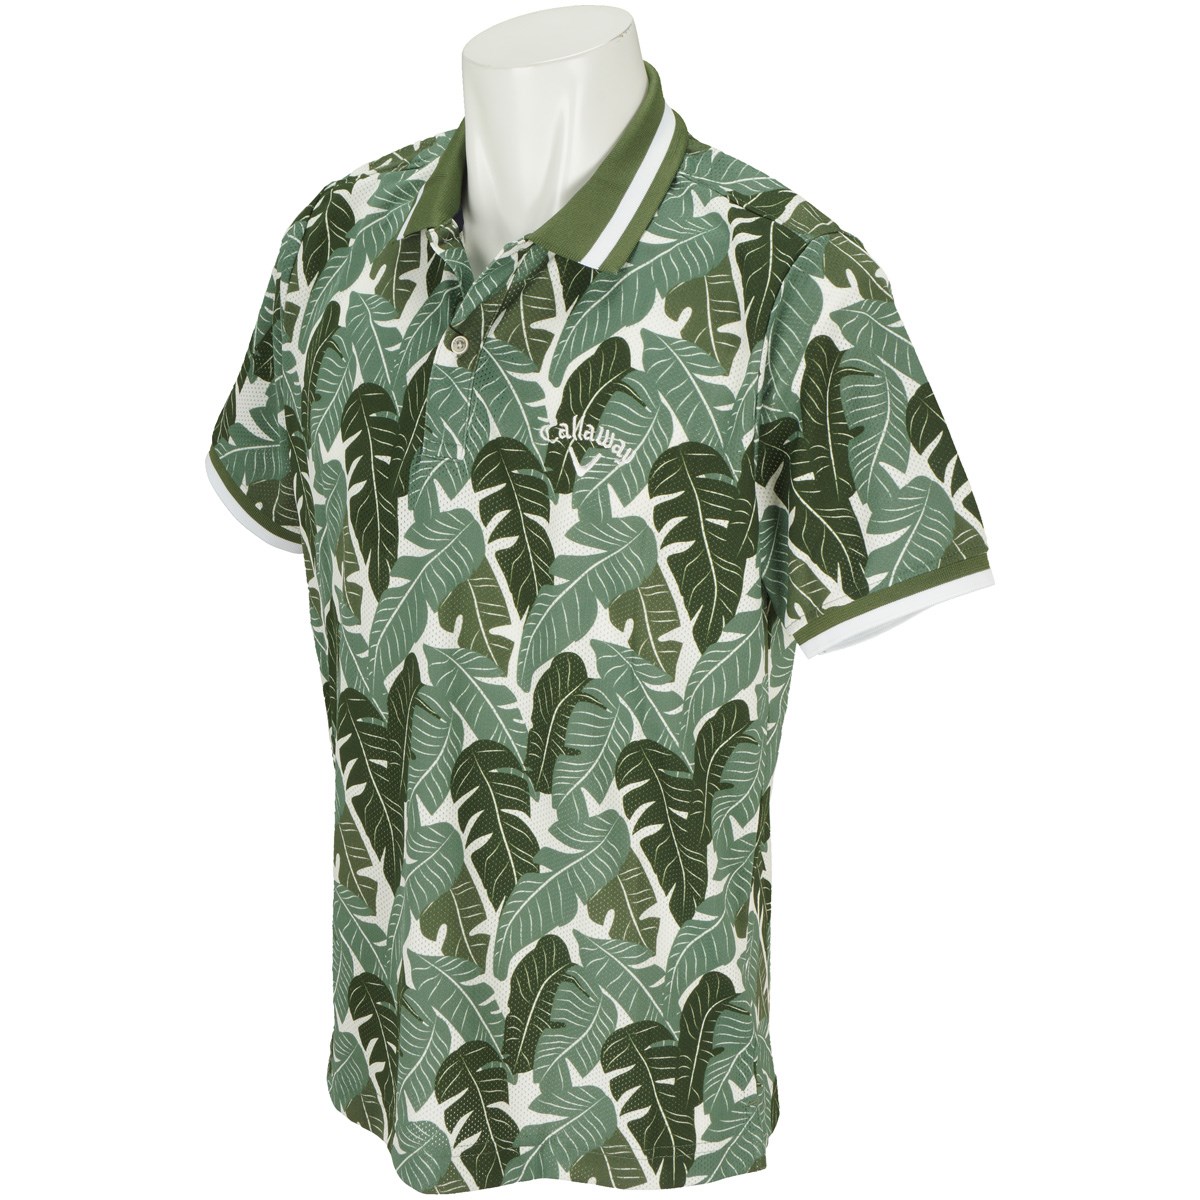 キャロウェイゴルフ(Callaway Golf) ボタニカルプリント半袖ポロシャツ 